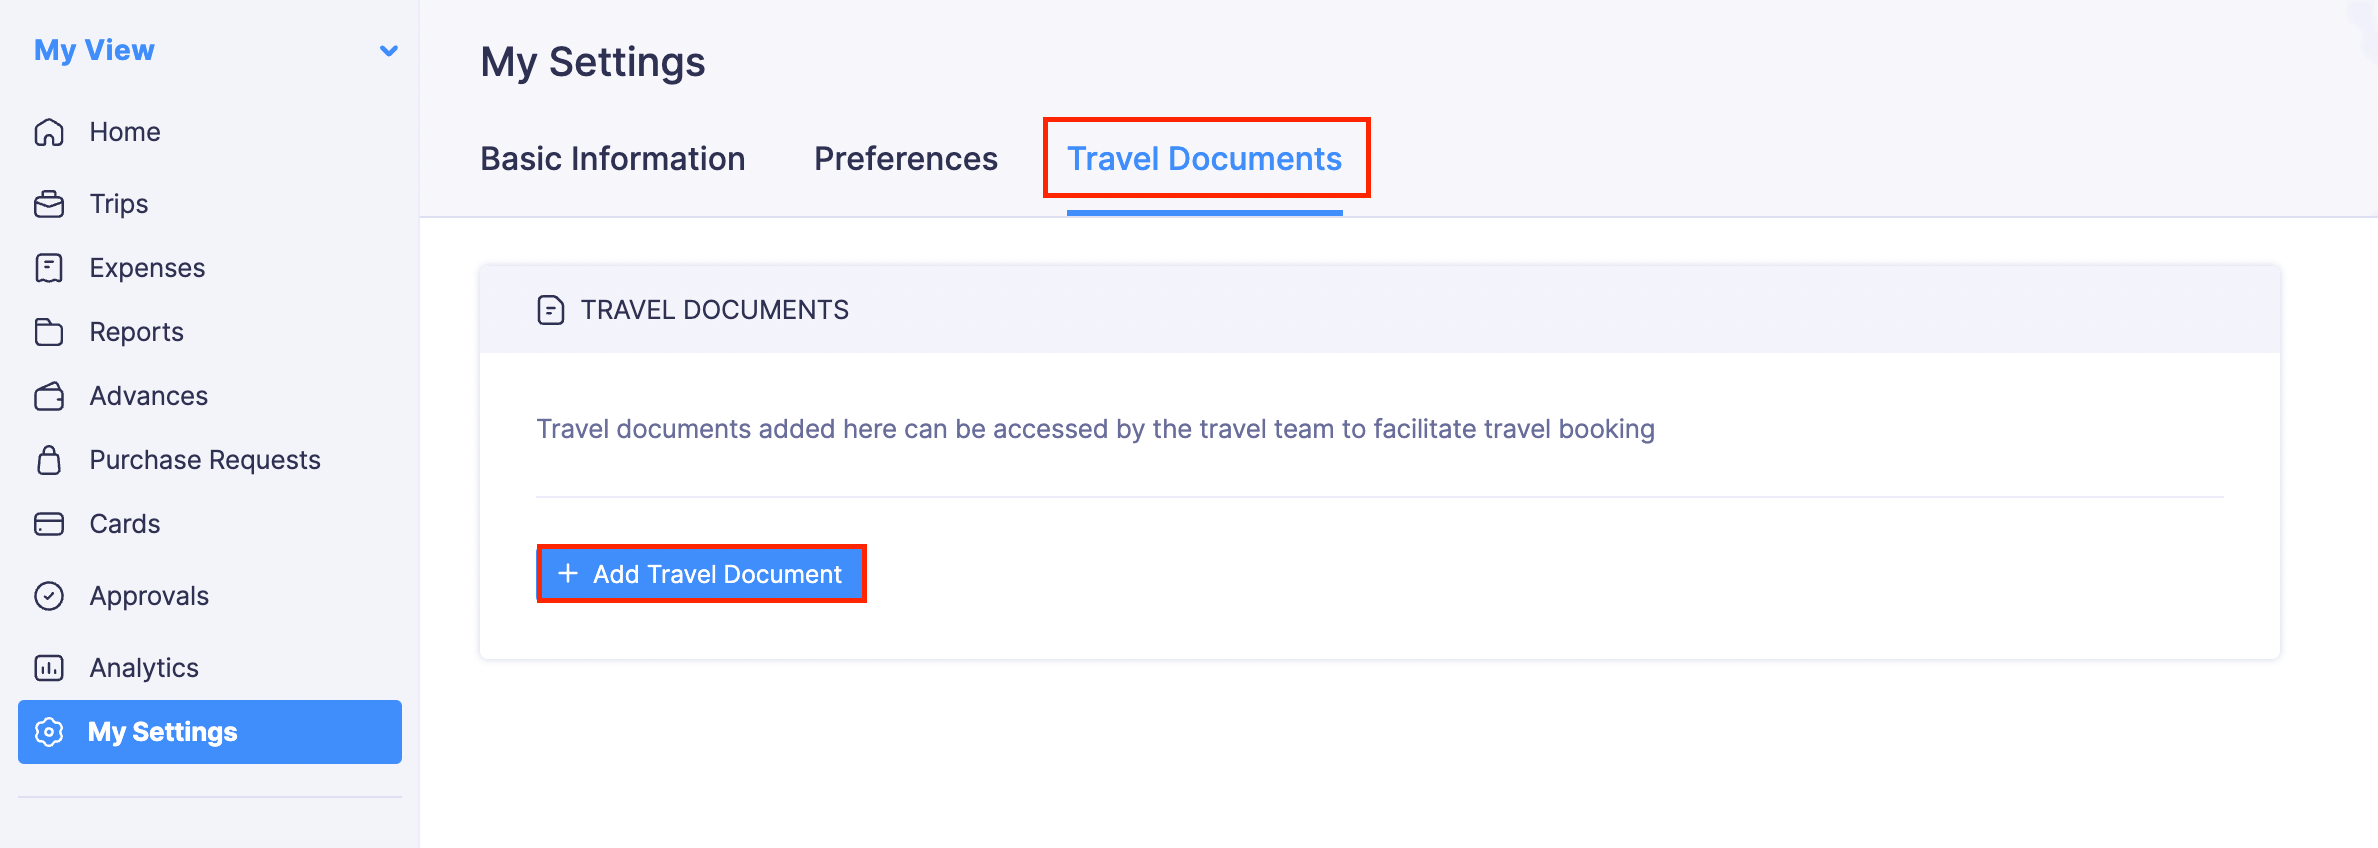 Travel Documents